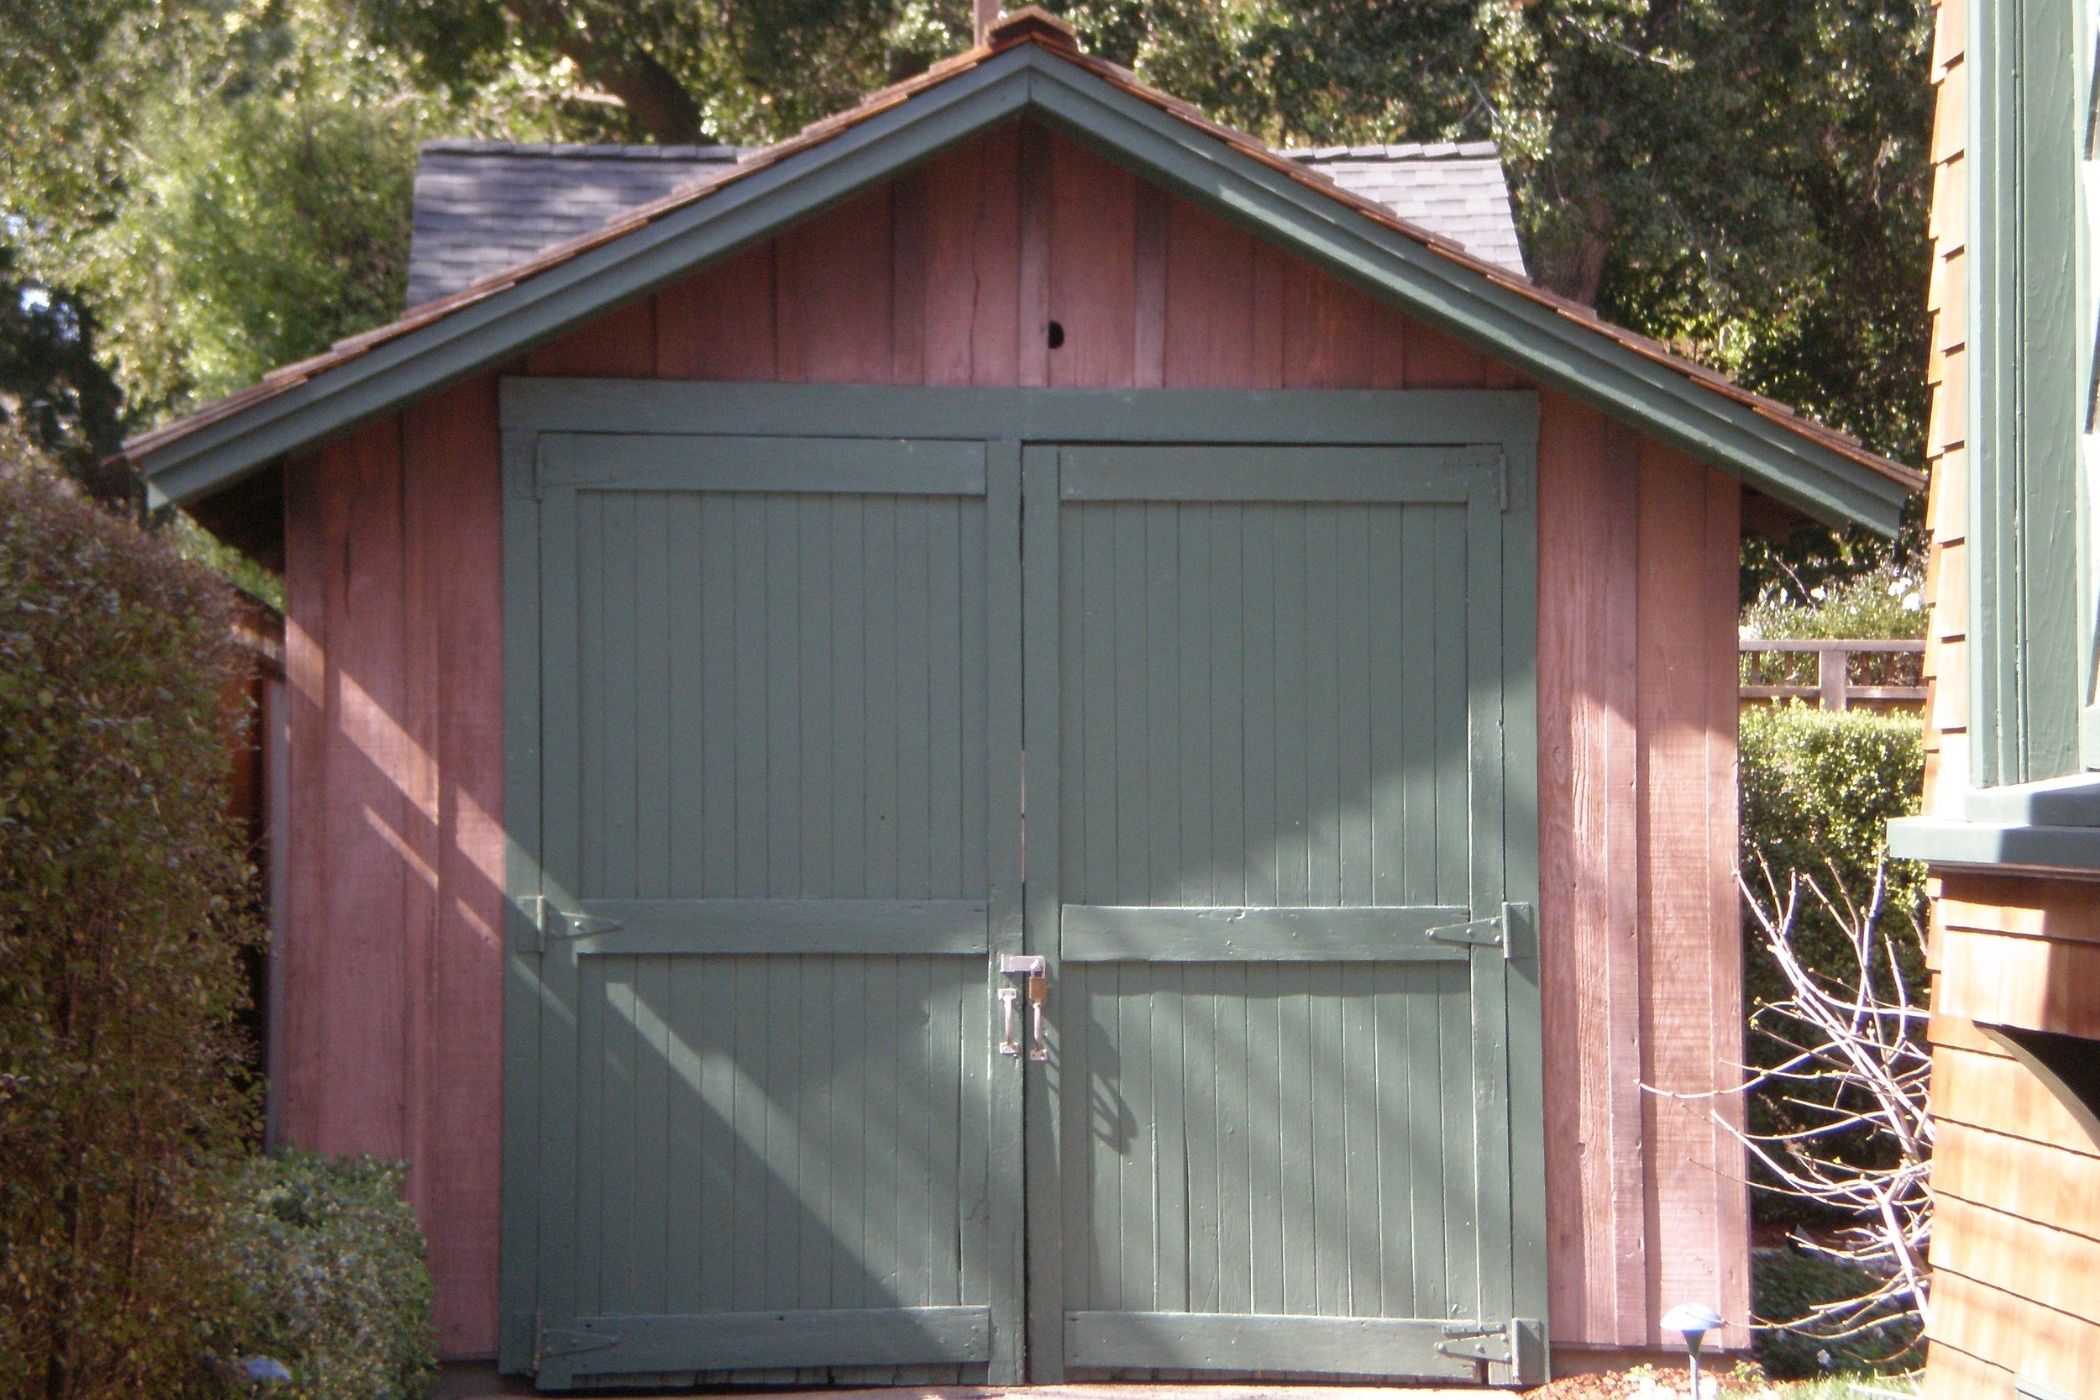 The HP garage at 367-369 Addison Avenue in Palo Alto, California